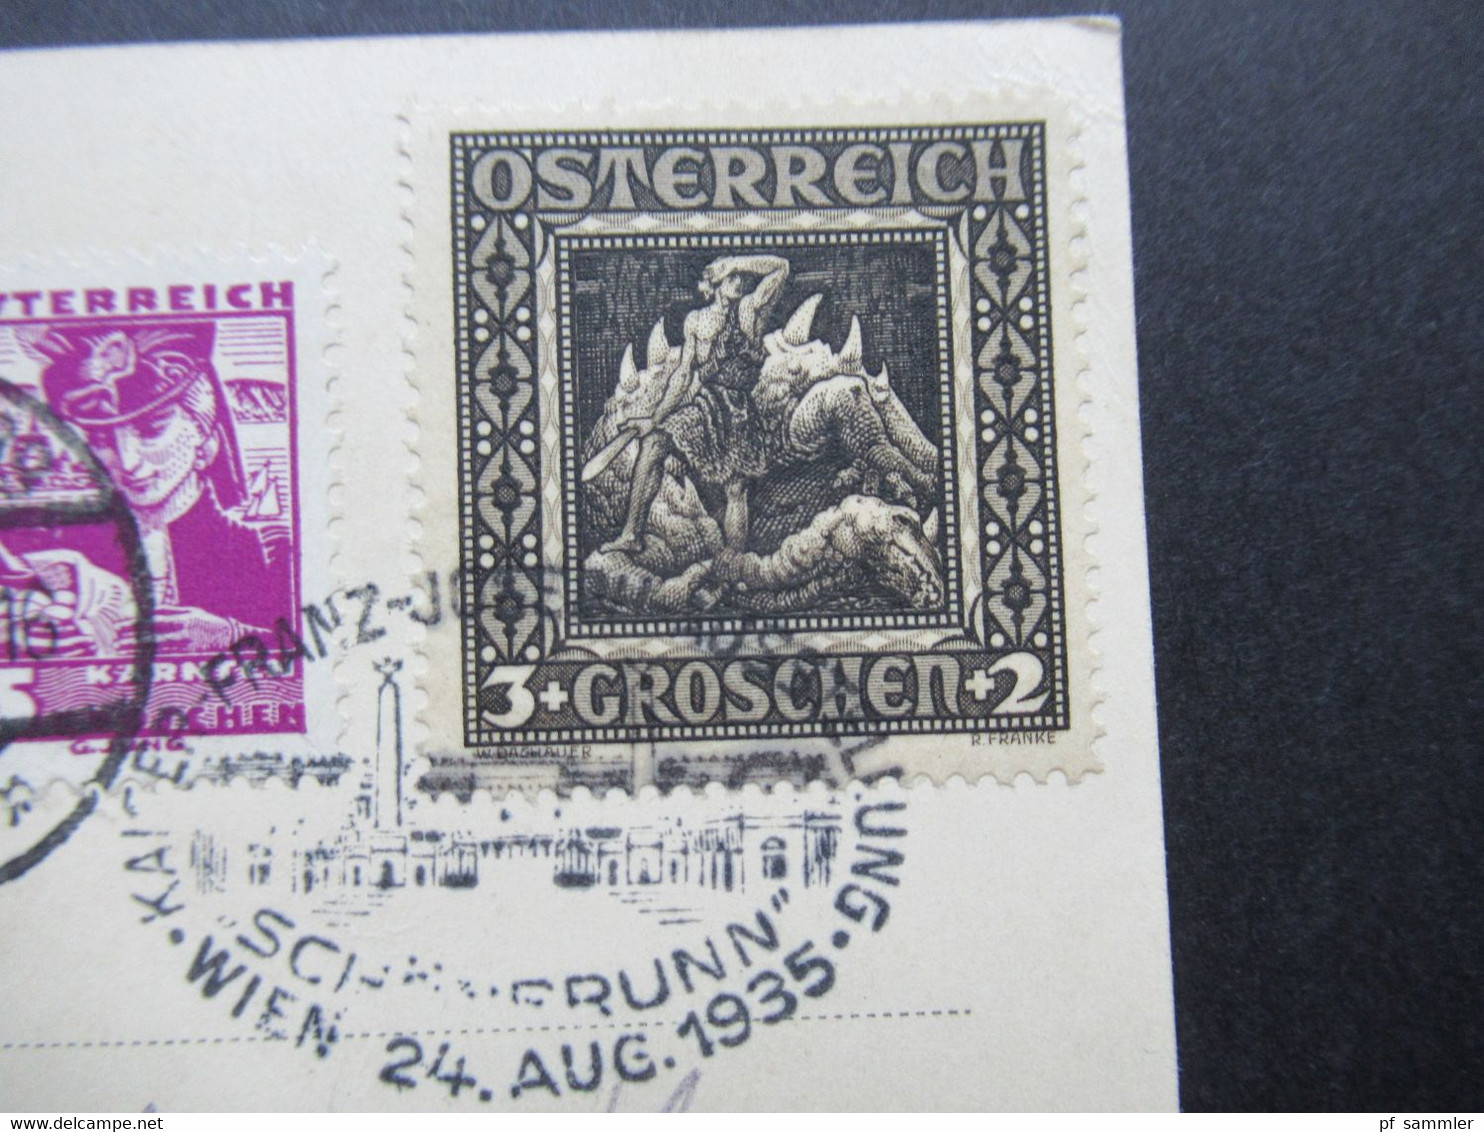 1935 Offizielle PK Kaiser Franz Josef Ausstellung Mit Vignette Und Sonderstempel MiF Mit Nibelungensage Nr. 488 - Covers & Documents